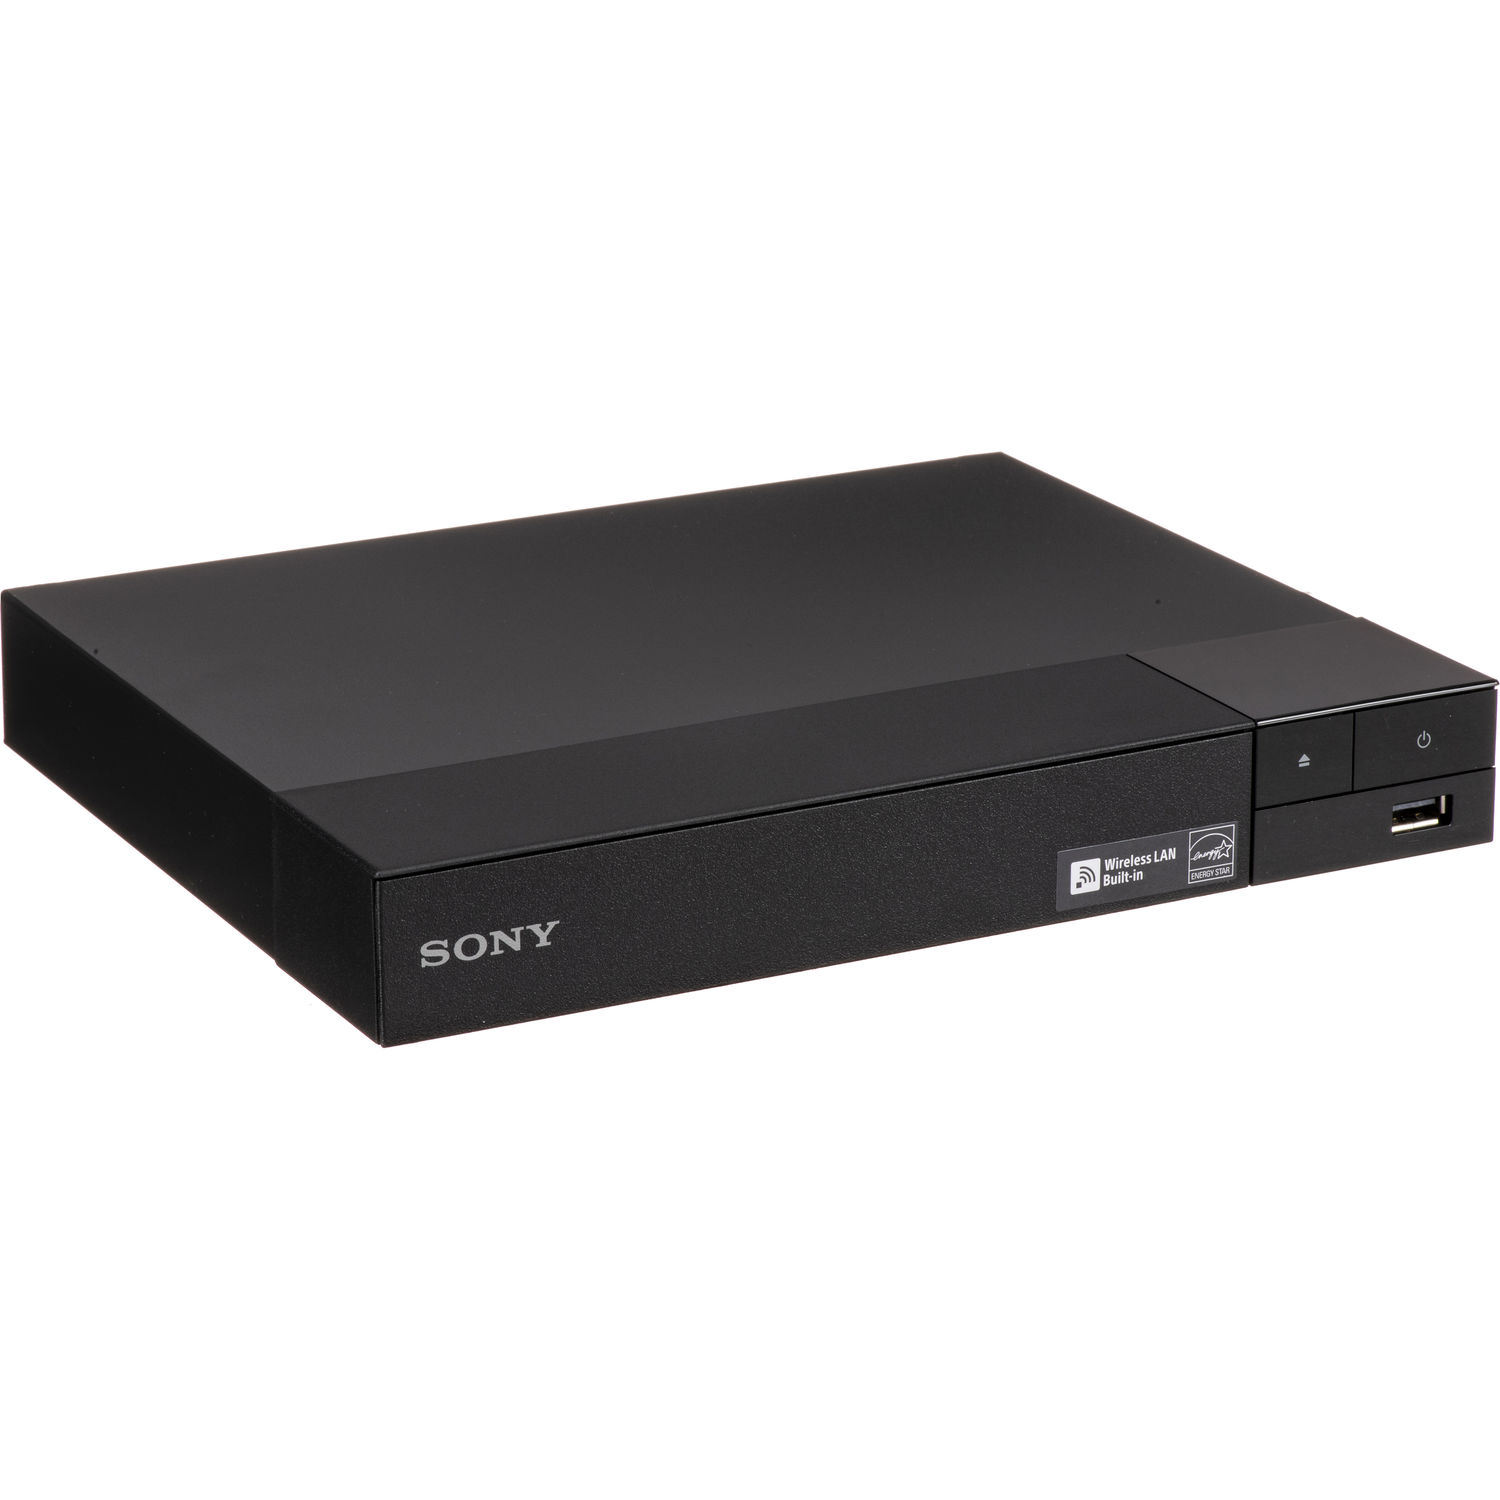 Reproductor de Blu Ray Sony Bdp S3700 con Wi Fi